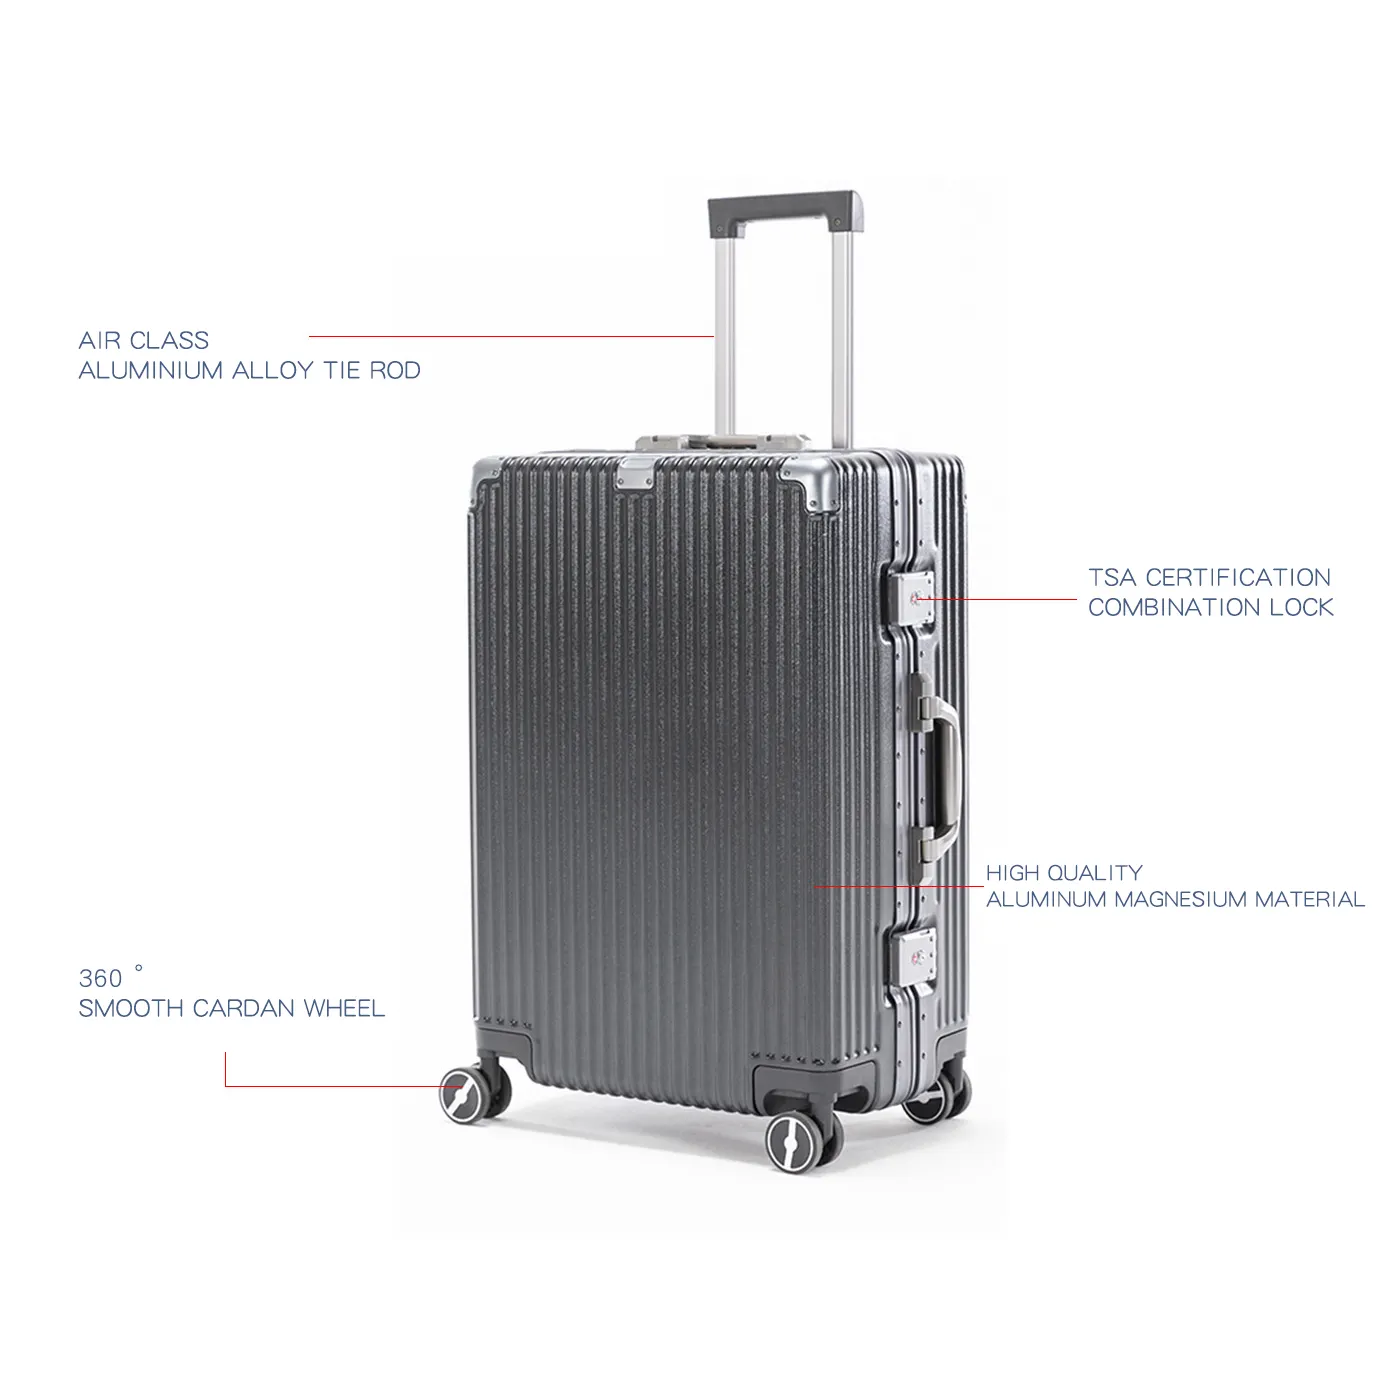 Voyage chariot bagages valise en gros avec roues tournantes 3 pièces ensembles valise sac chariot sacs bagages pour voyage